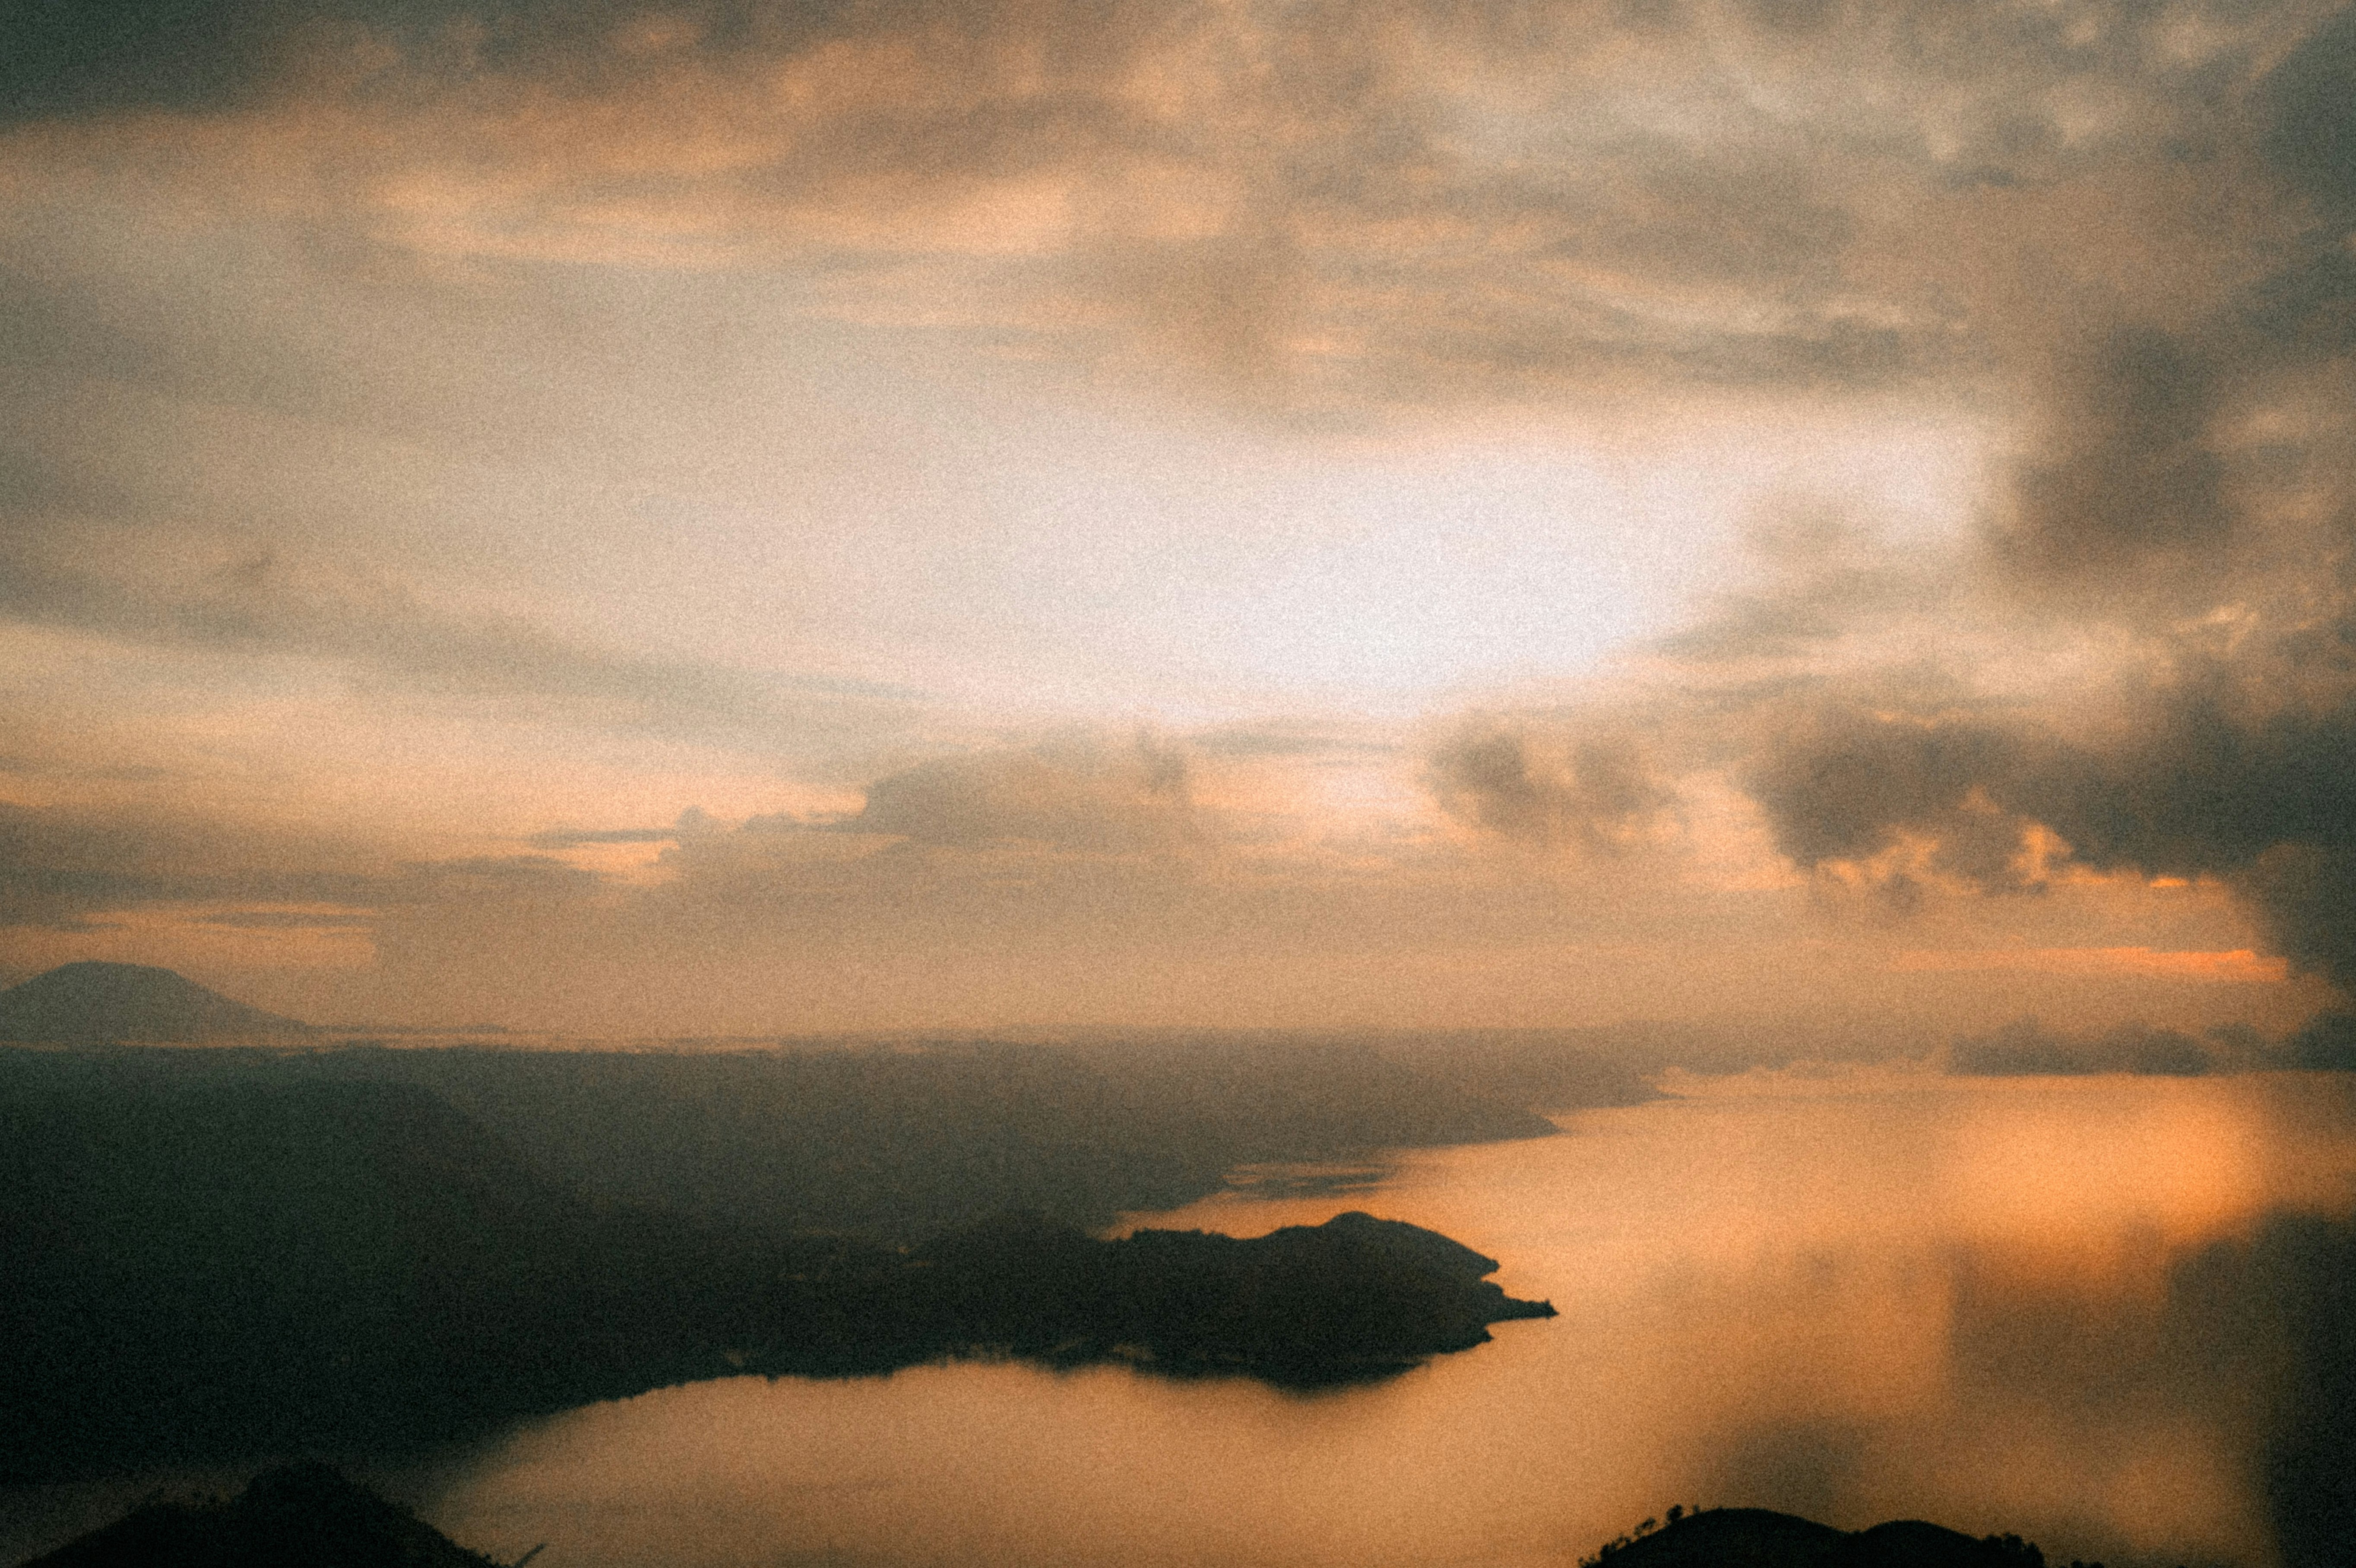 Sunrise at Lake Toba